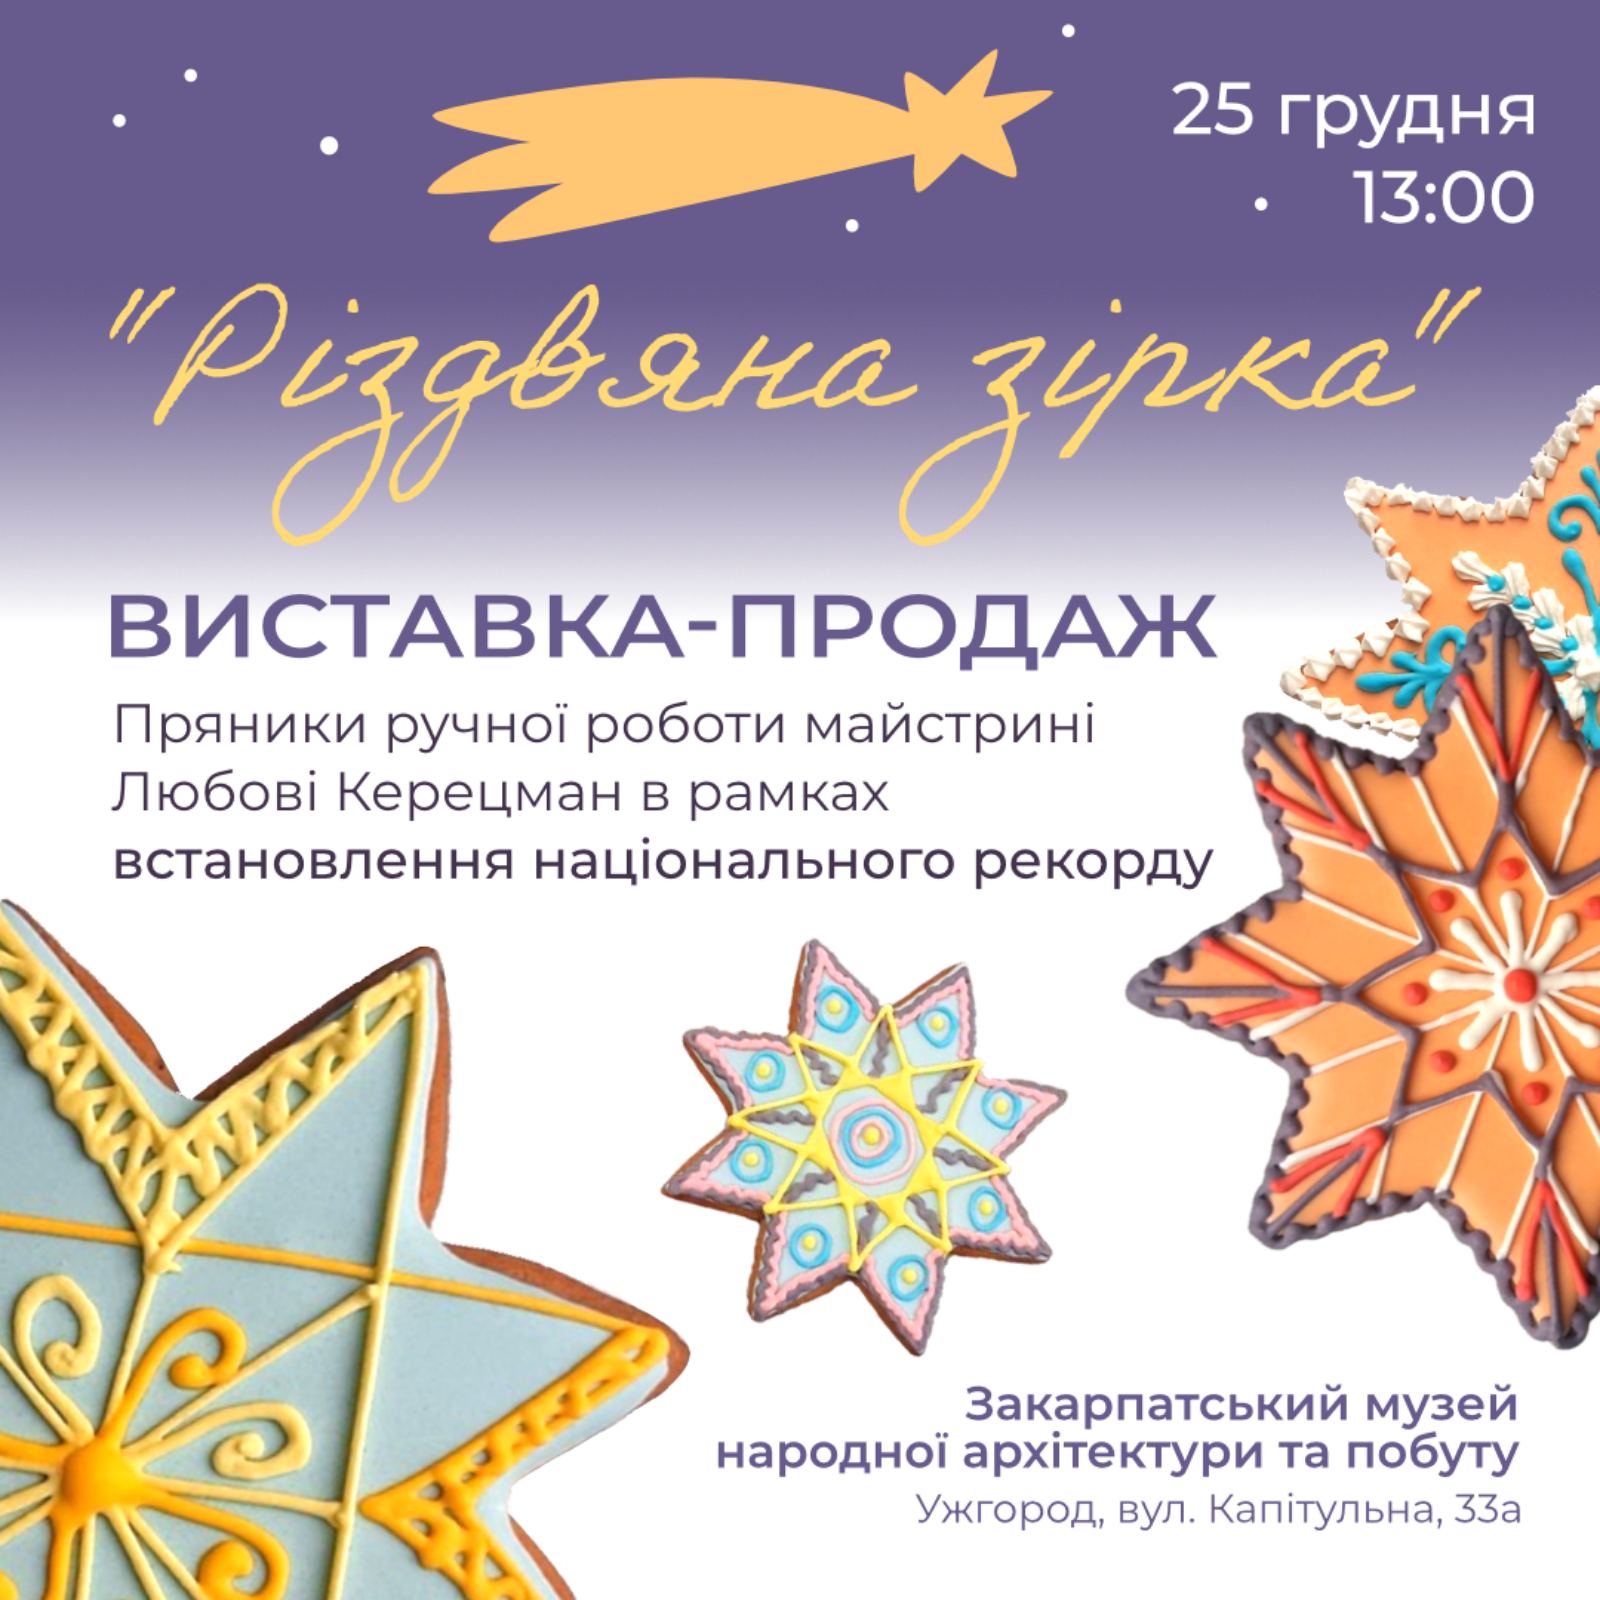 В Ужгороді в рамках встановлення національного рекорду відбудеться виставка-продаж святкових смаколиків "Різдвяна зірка"